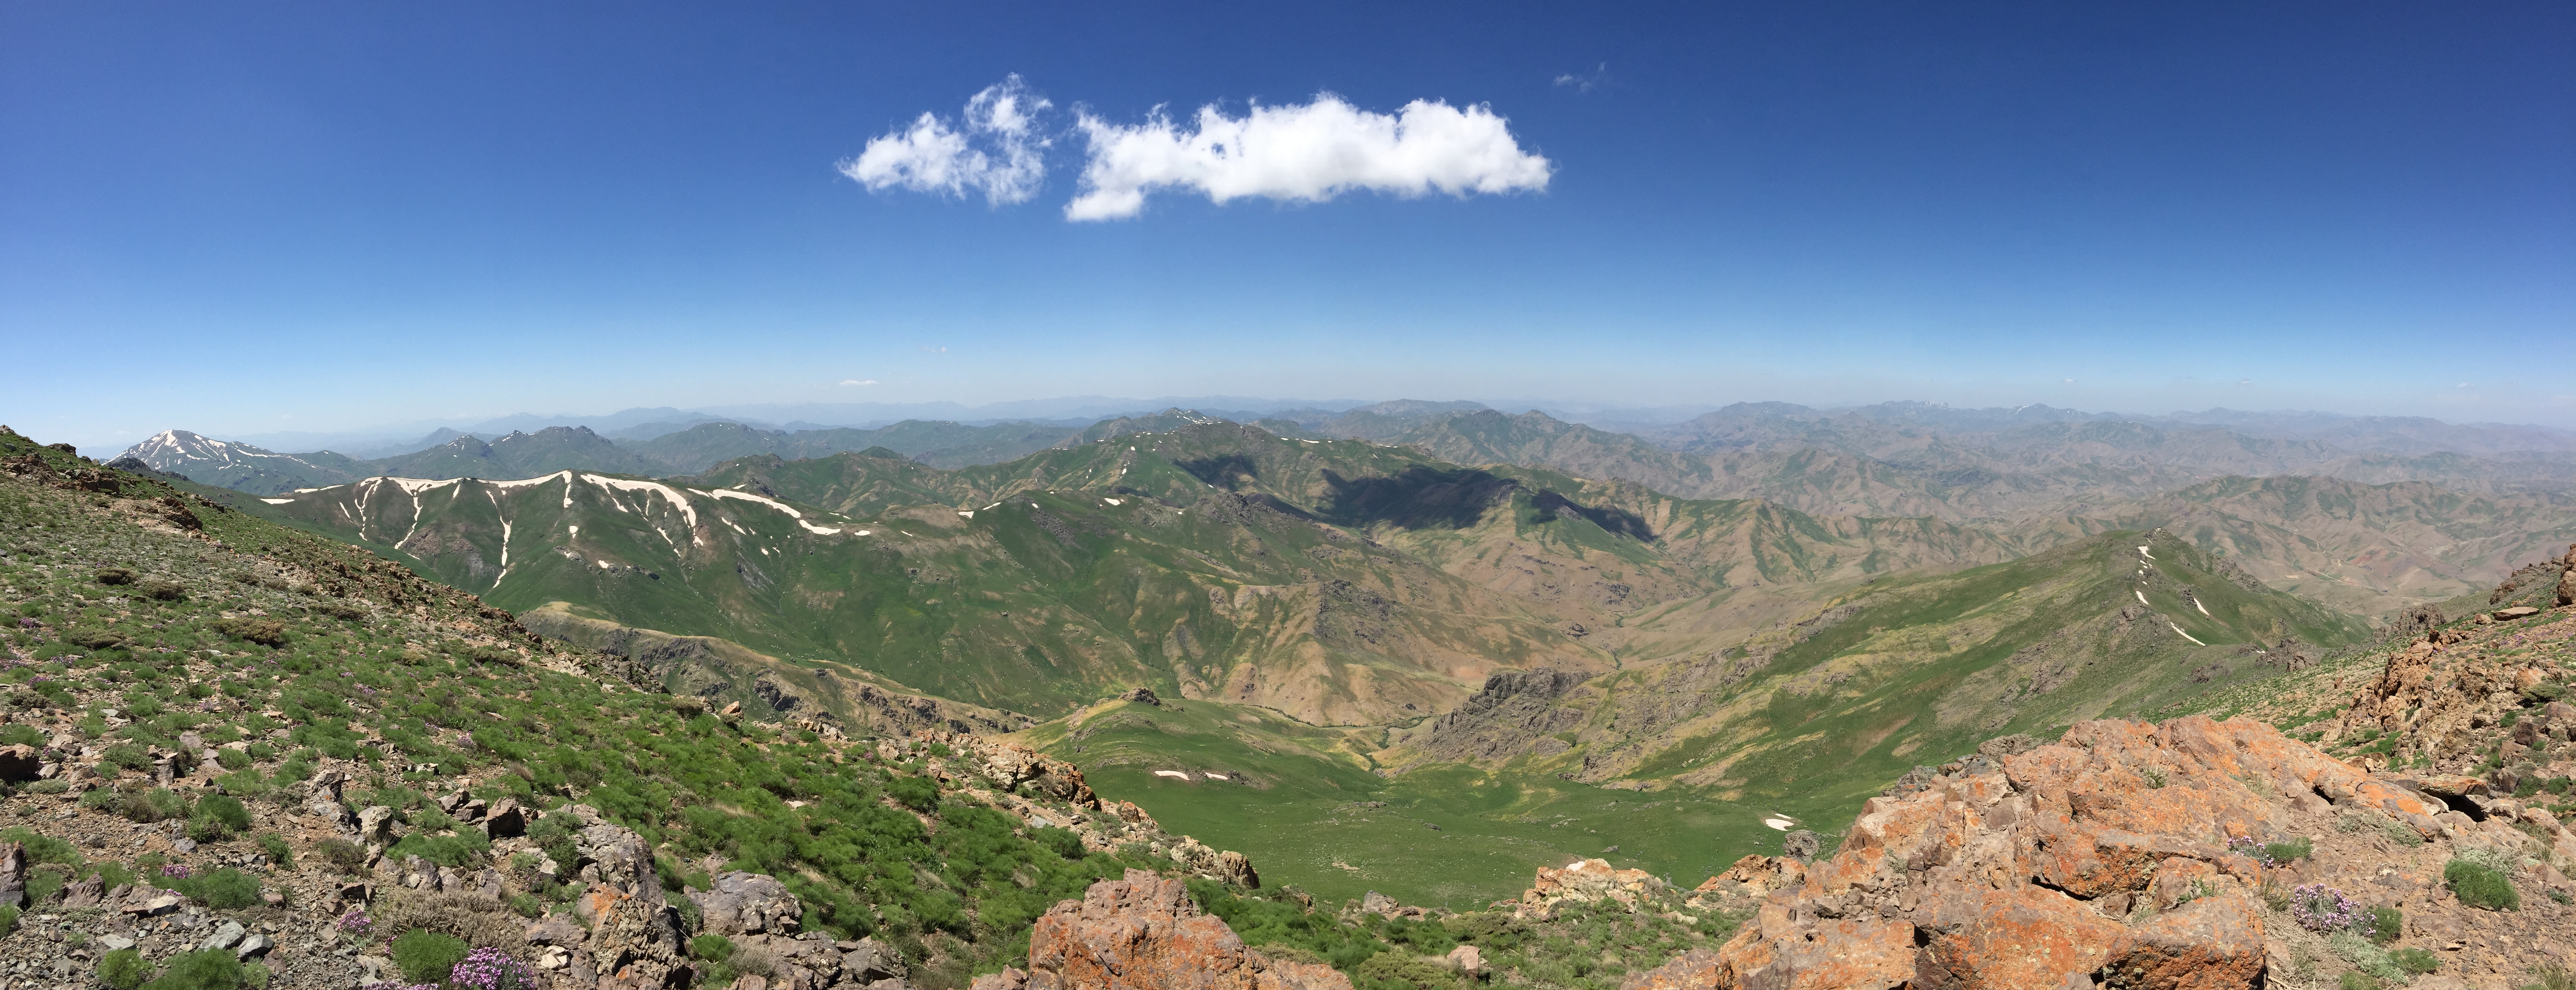 Chehel Cheshmeh Mountain